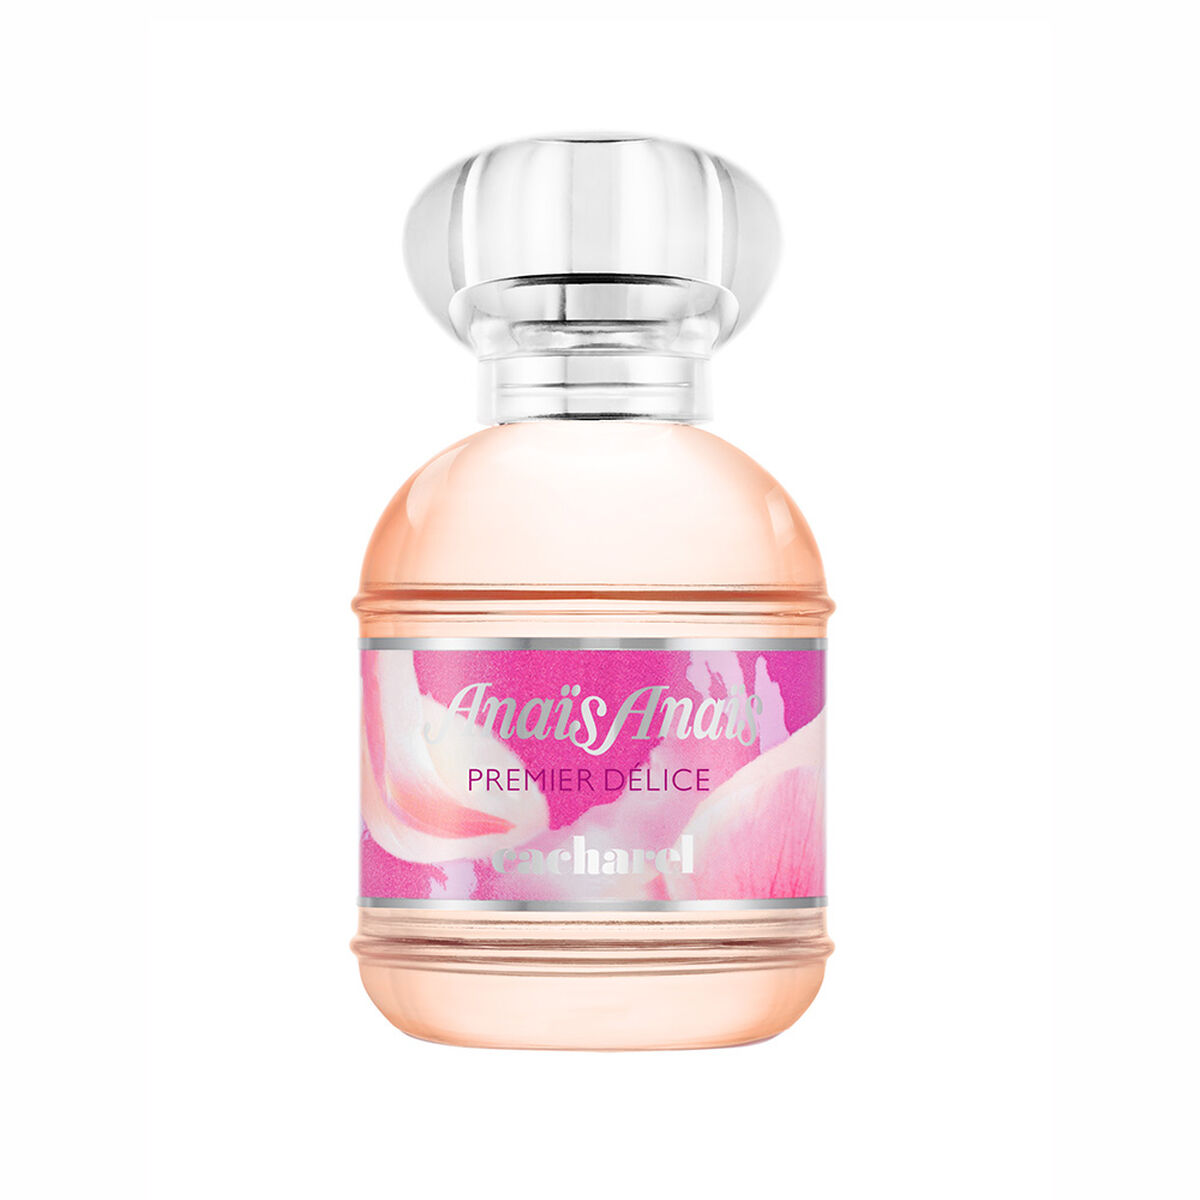 Perfume Cacharel Anais Anais Premier Delice EDT 30 ml